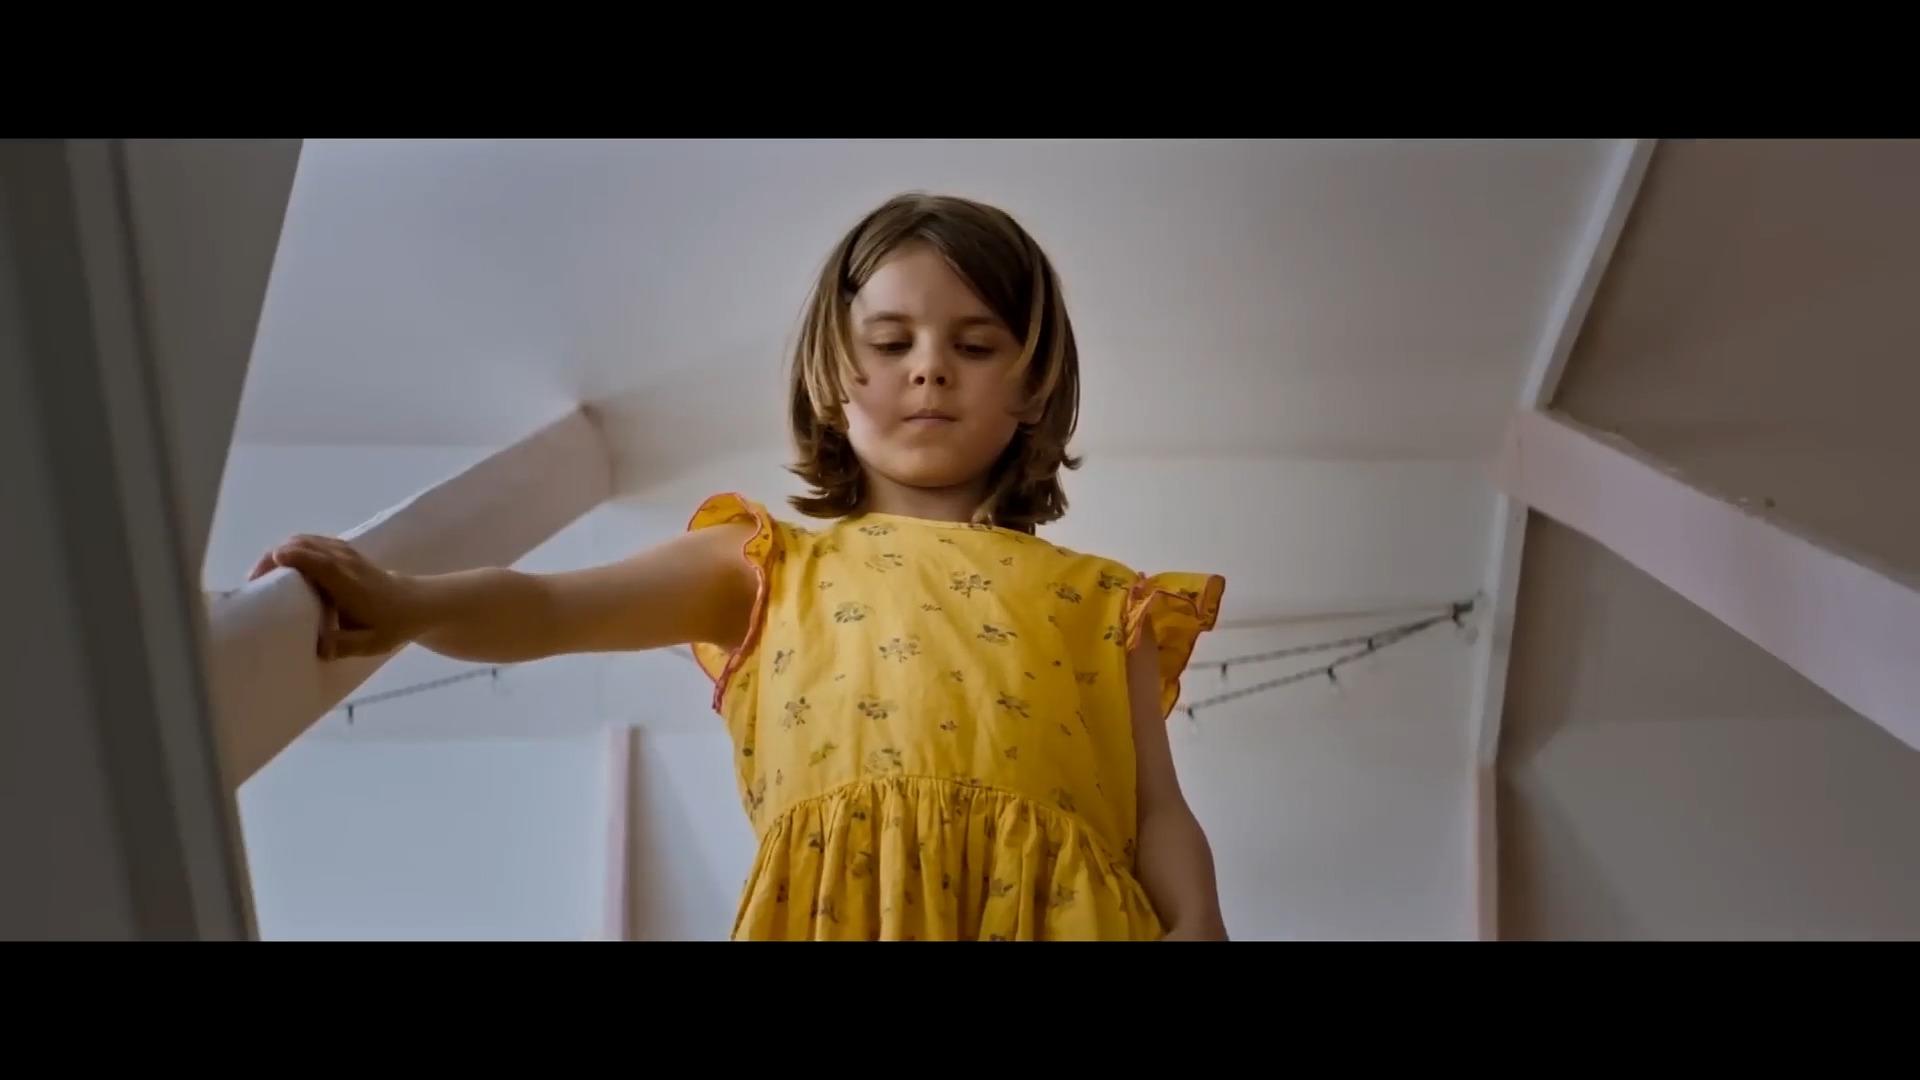 Trailer zum Film "Oskars Kleid" Mit Herz und Humor